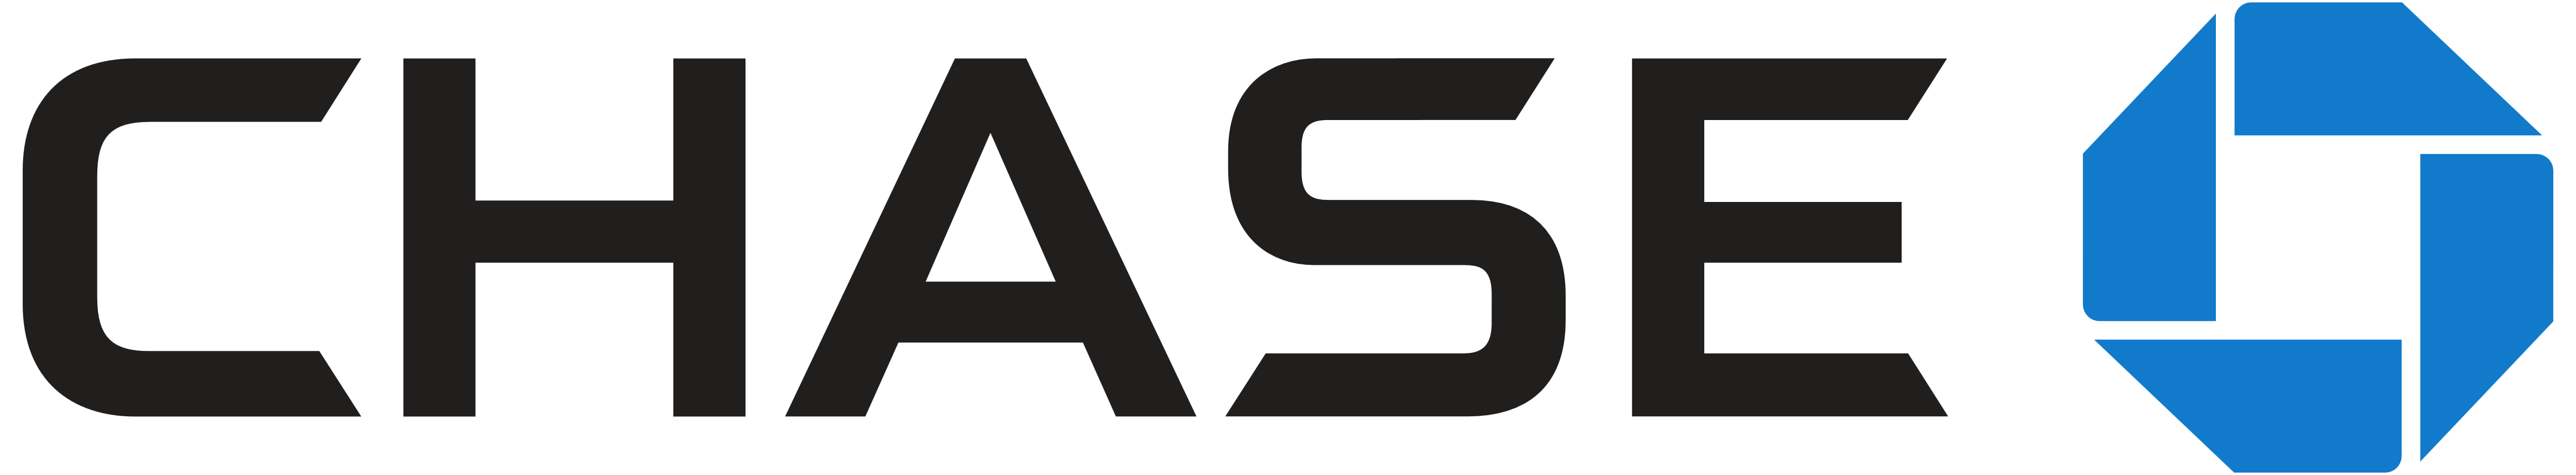 Chase Bank Logo History